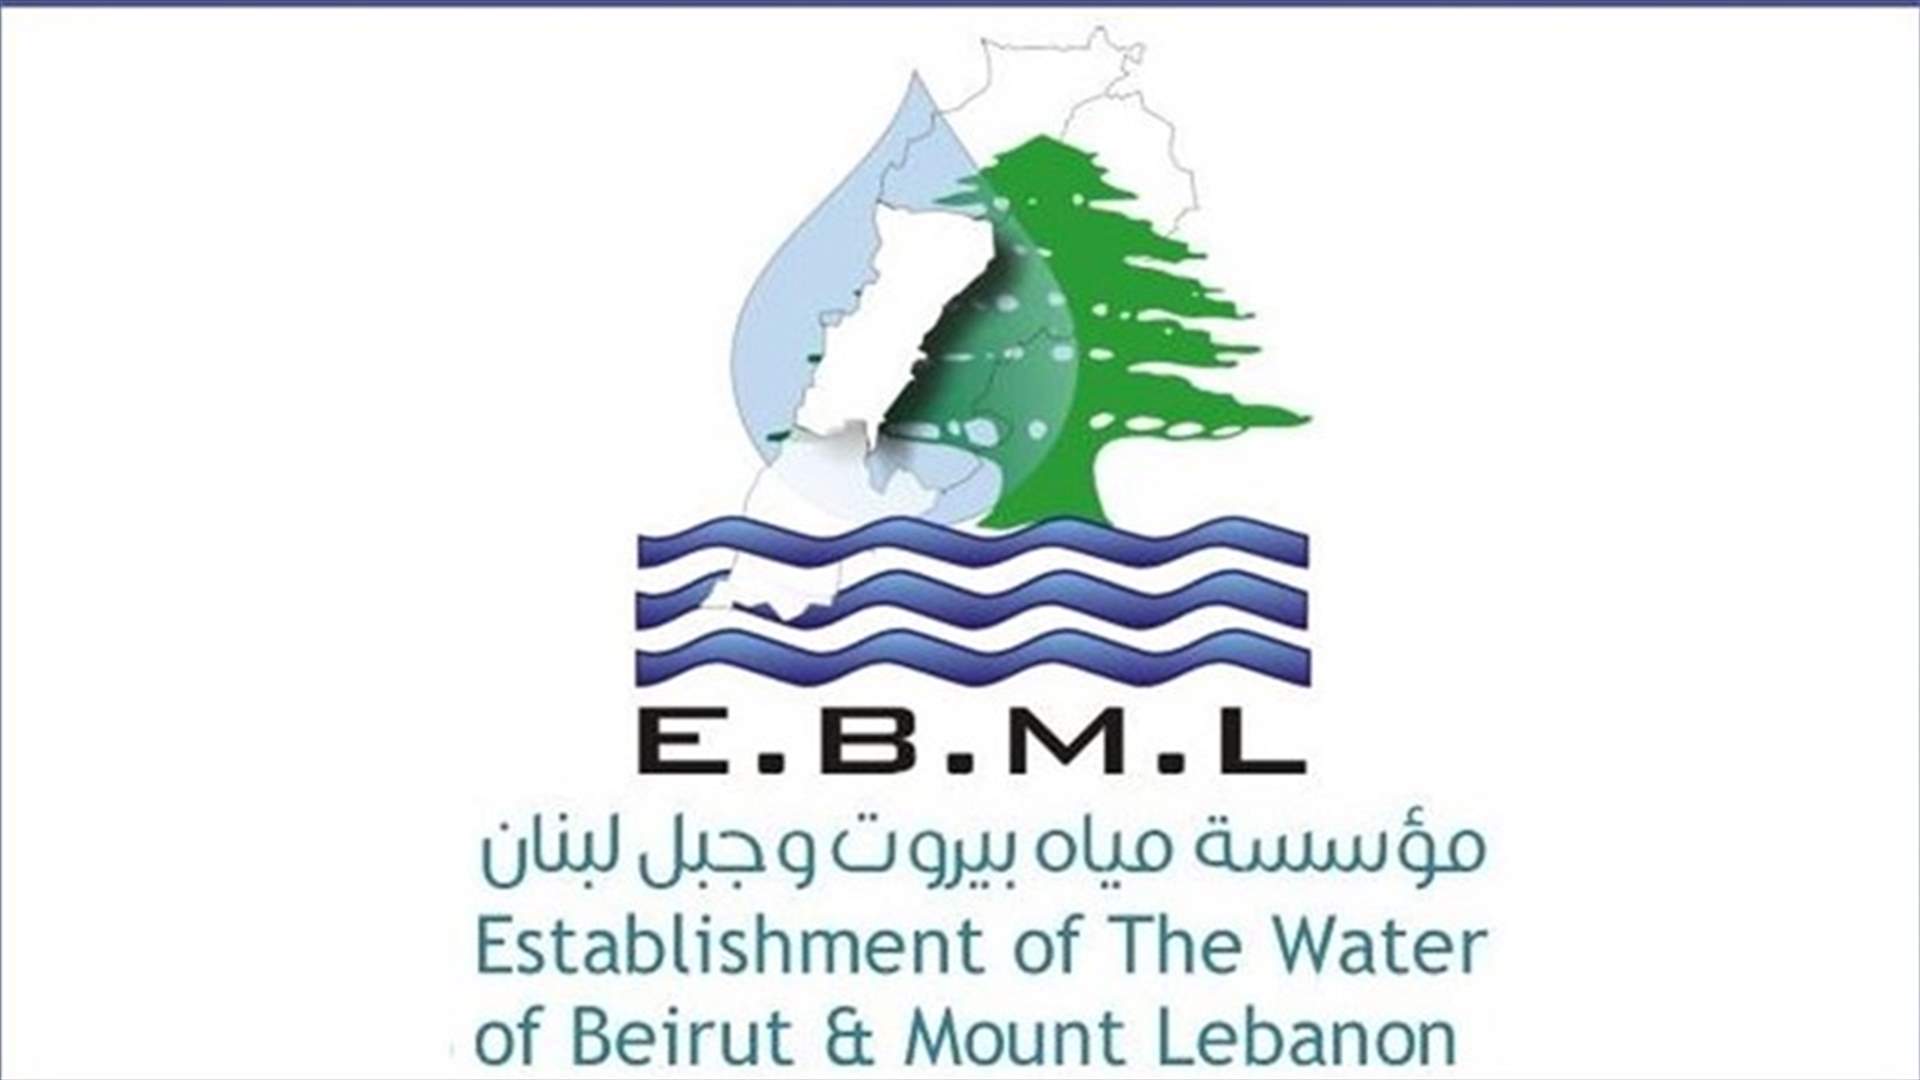 بعد تداول خبر تلوث المياه في احدى مناطق الضاحية الجنوبية... هذا ما اعلنته مؤسسة مياه بيروت وجبل لبنان